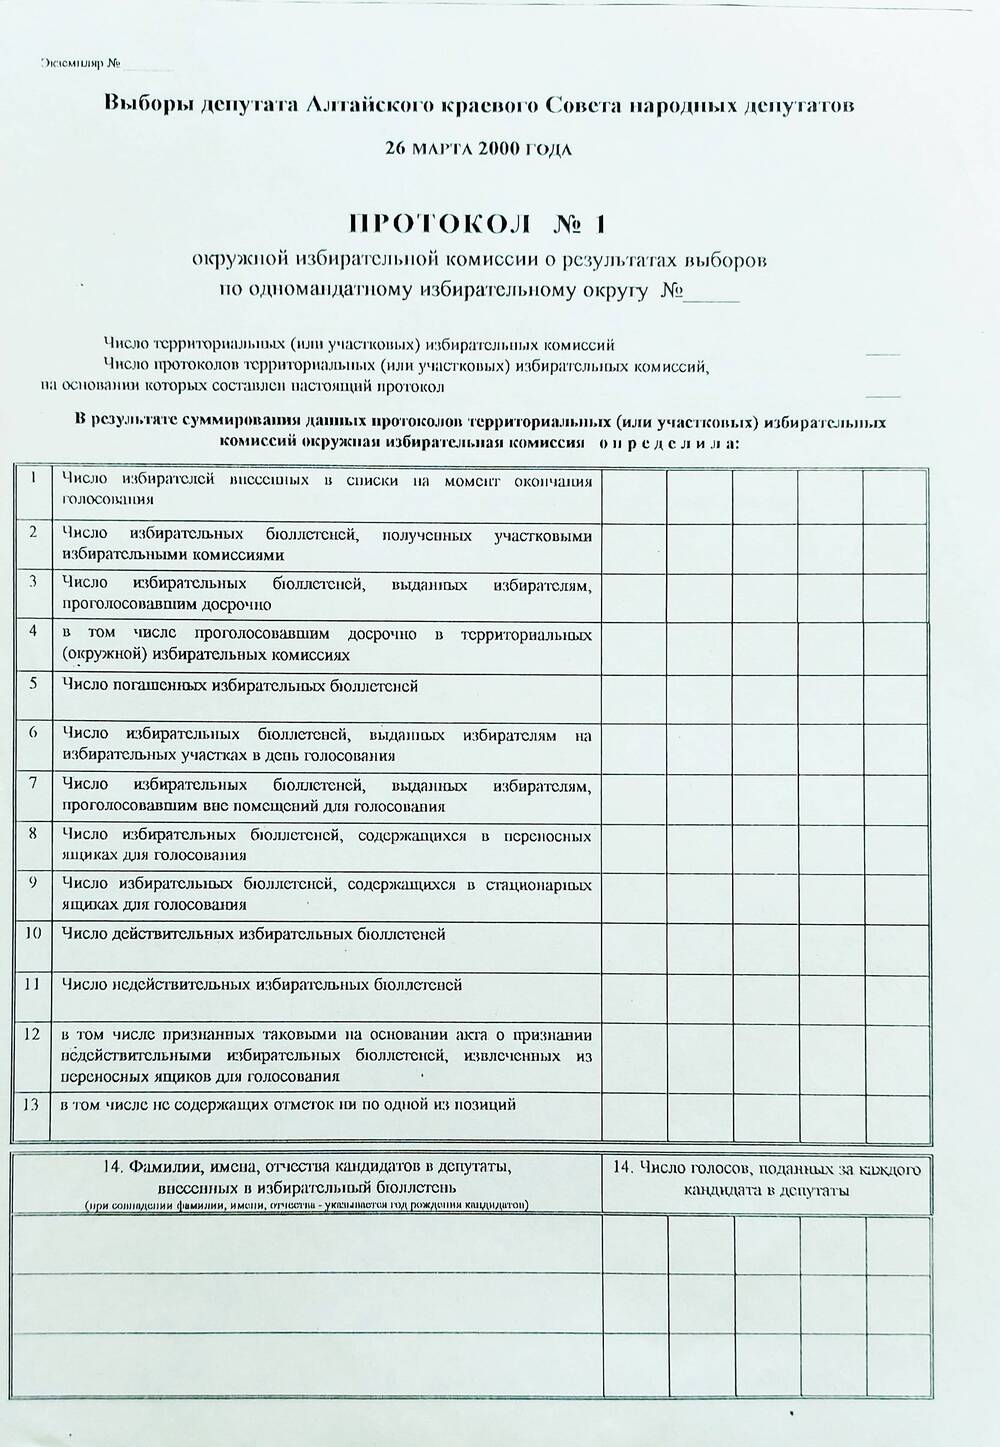 Бланк протокола № 1 окружной избирательной комиссии о результатах выборов по одномандатному избирательному округу.